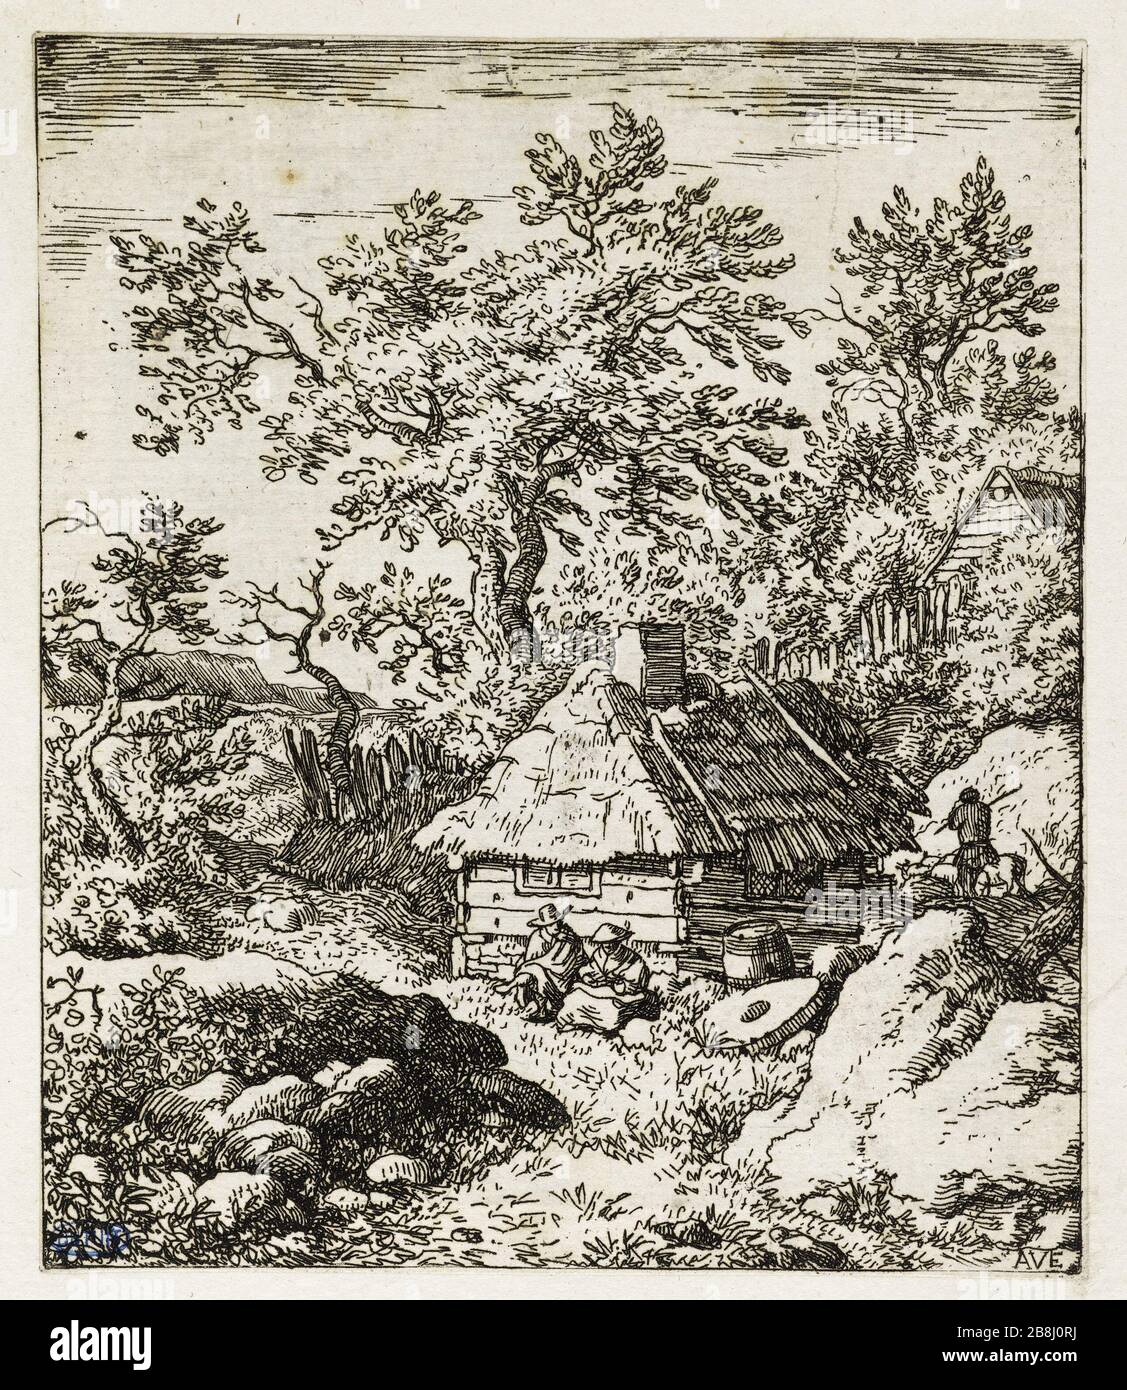 La Meule (Bartsch 9) Allart Van Everdingen (1621-1675), peintre hollandais. La Meule (Bartsch 9). Eau-forte sur Papier, 1645-1675. Musée des Beaux-Arts de la Ville de Paris, Petit Palais. Stockfoto